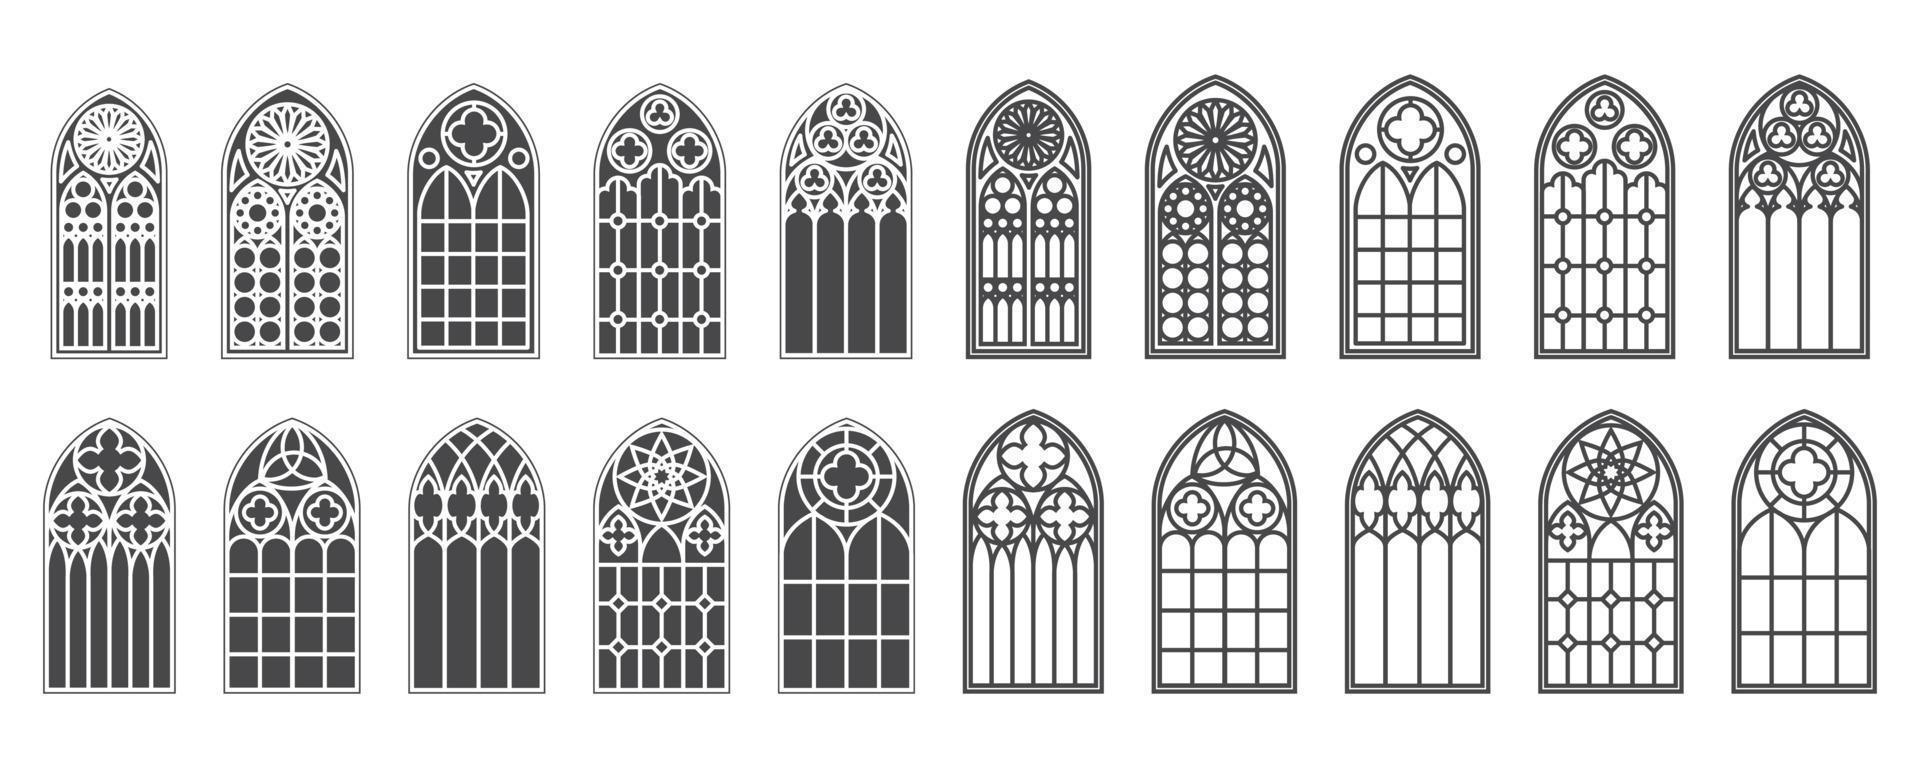 conjunto de janelas da igreja. silhuetas de arcos góticos em estilo clássico de linha e glifo. molduras de vidro da antiga catedral. elementos interiores medievais. vetor